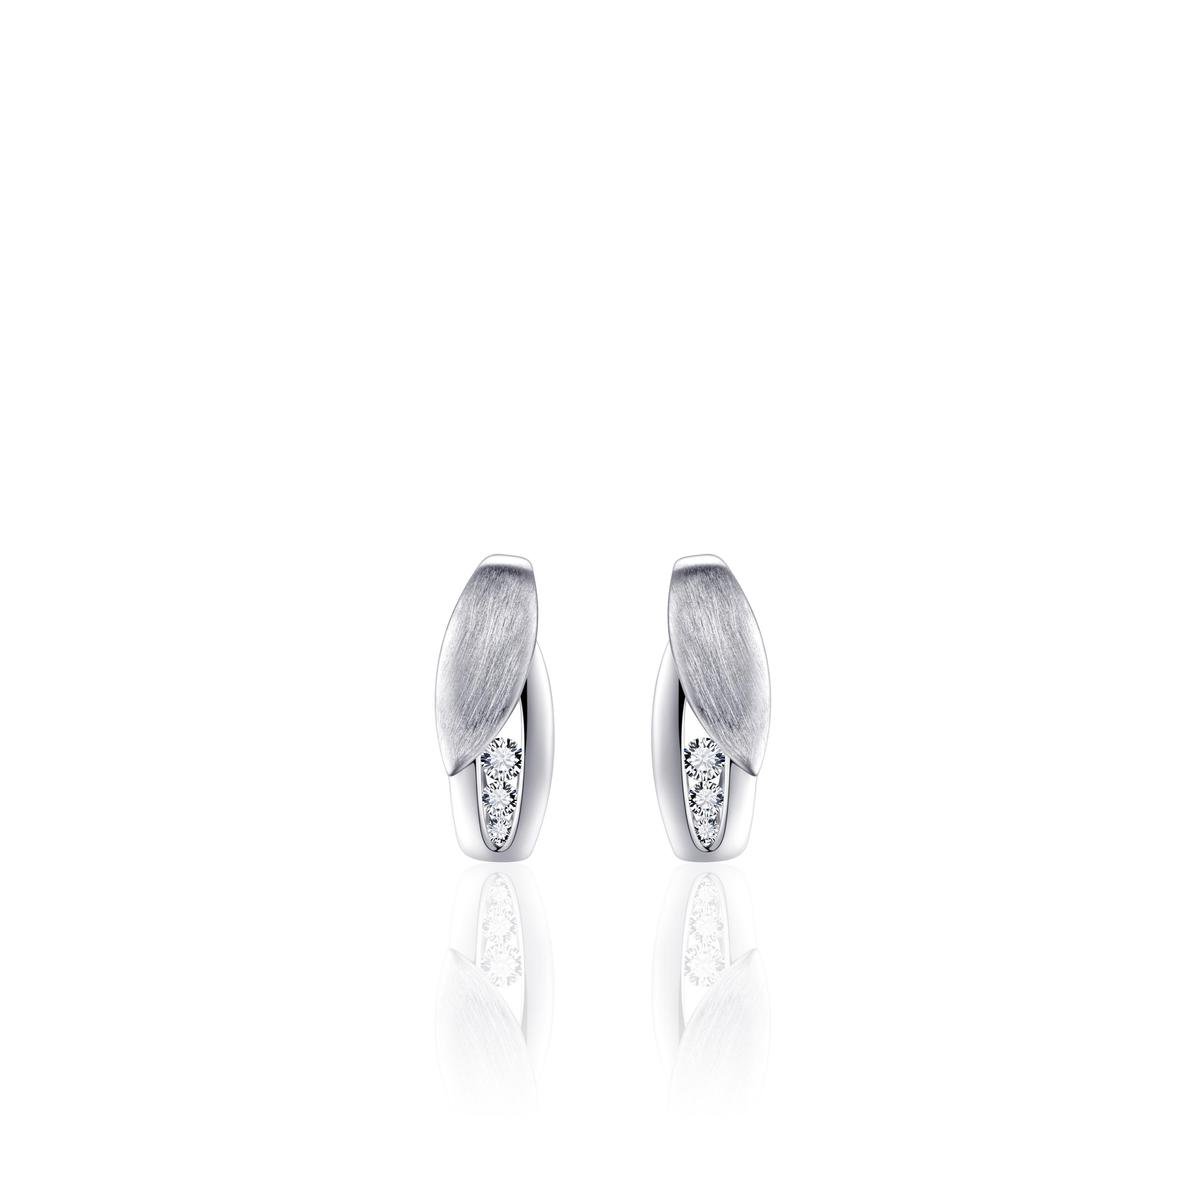 Jewels Inc. - Oorbellen - Oorstekers Fantasie gezet met Zirkonia - 13mm x 5.5mm - Gerhodineerd Zilver 925